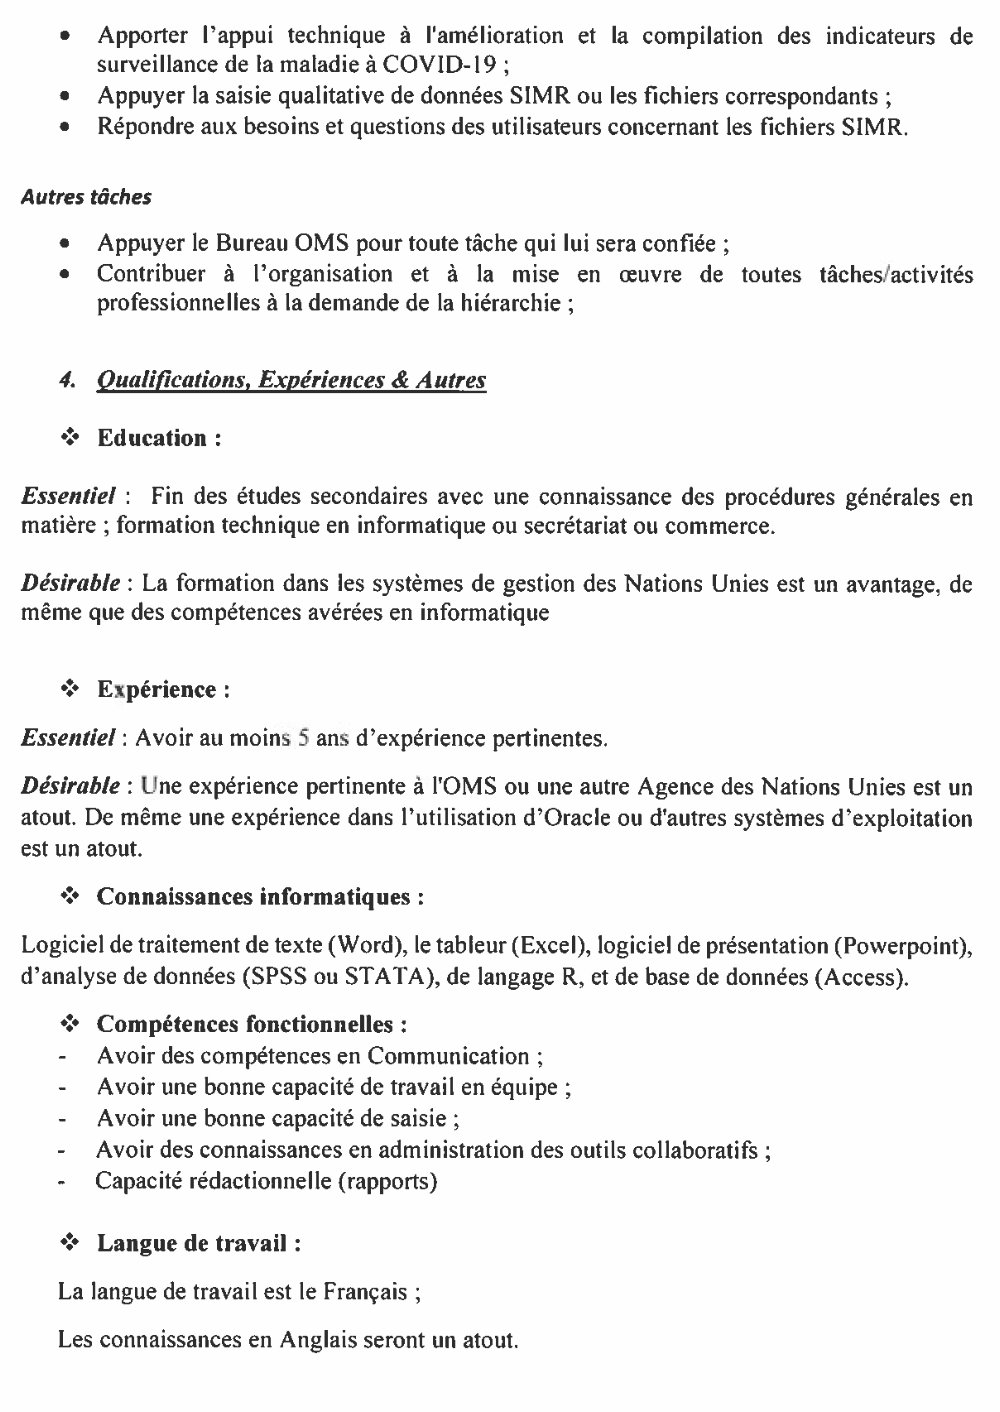 AVIS DE RECRUTEMENT DE TROIS (3) OPERATEURS DE SAISIE DES DONNEES DE SIMR DE LA BASE DE DONNEES SAP  PAGE 1